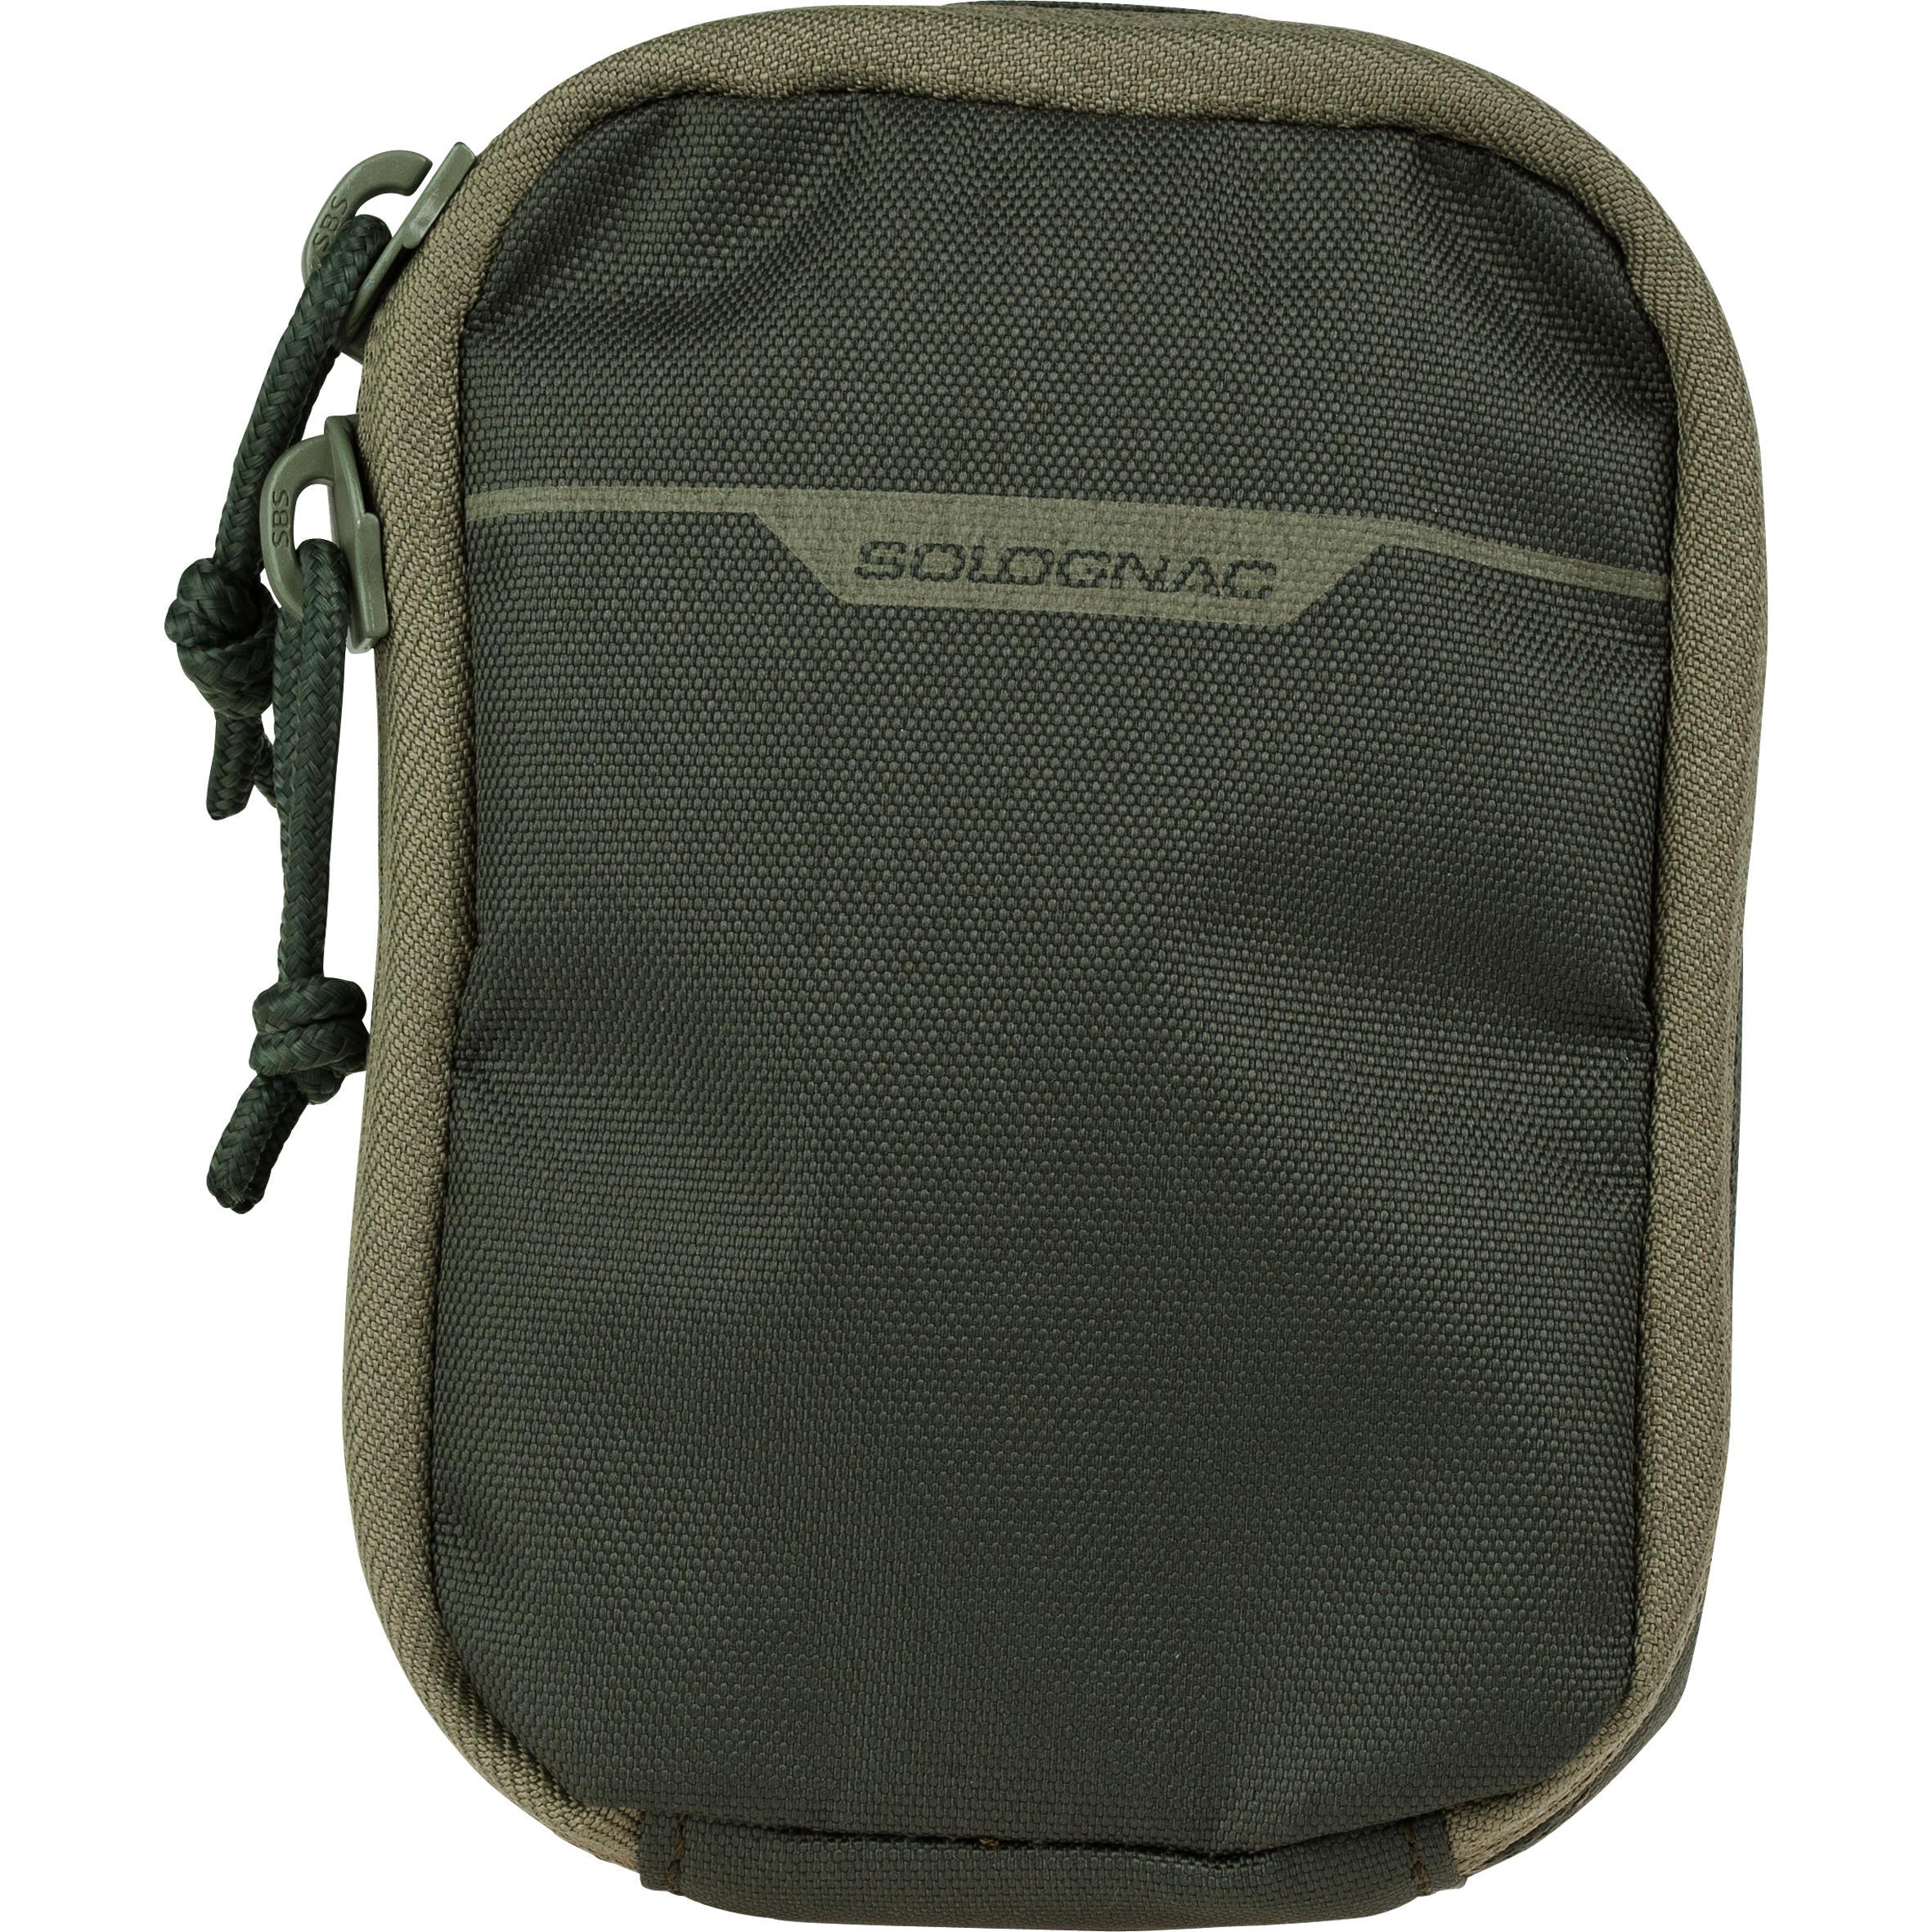 [ด่วน!! โปรโมชั่นมีจำนวนจำกัด]กระเป๋าจัดระเบียบรุ่น X-ACCESS ขนาด S 10X14 ซม. (สีเขียว)